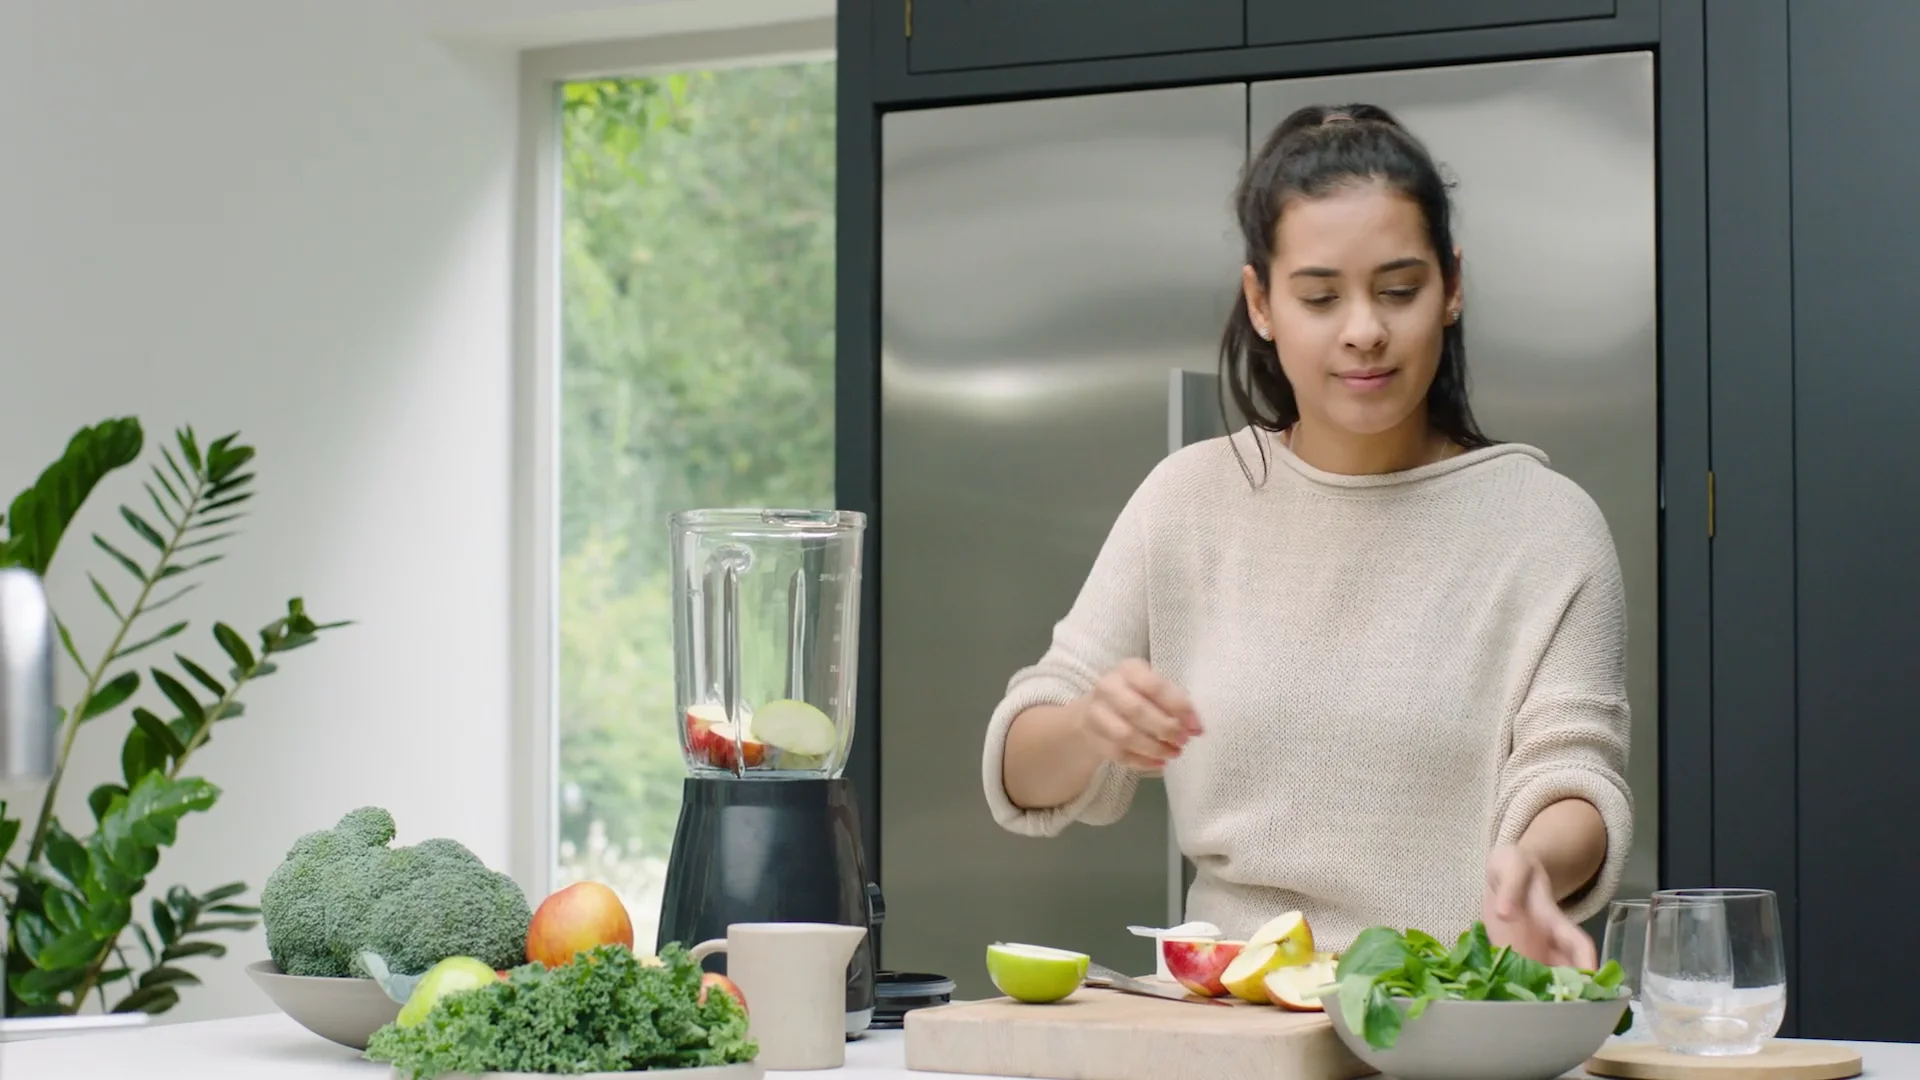 Juice Plus+׃ A Jumpstart to Better Health on Vimeo